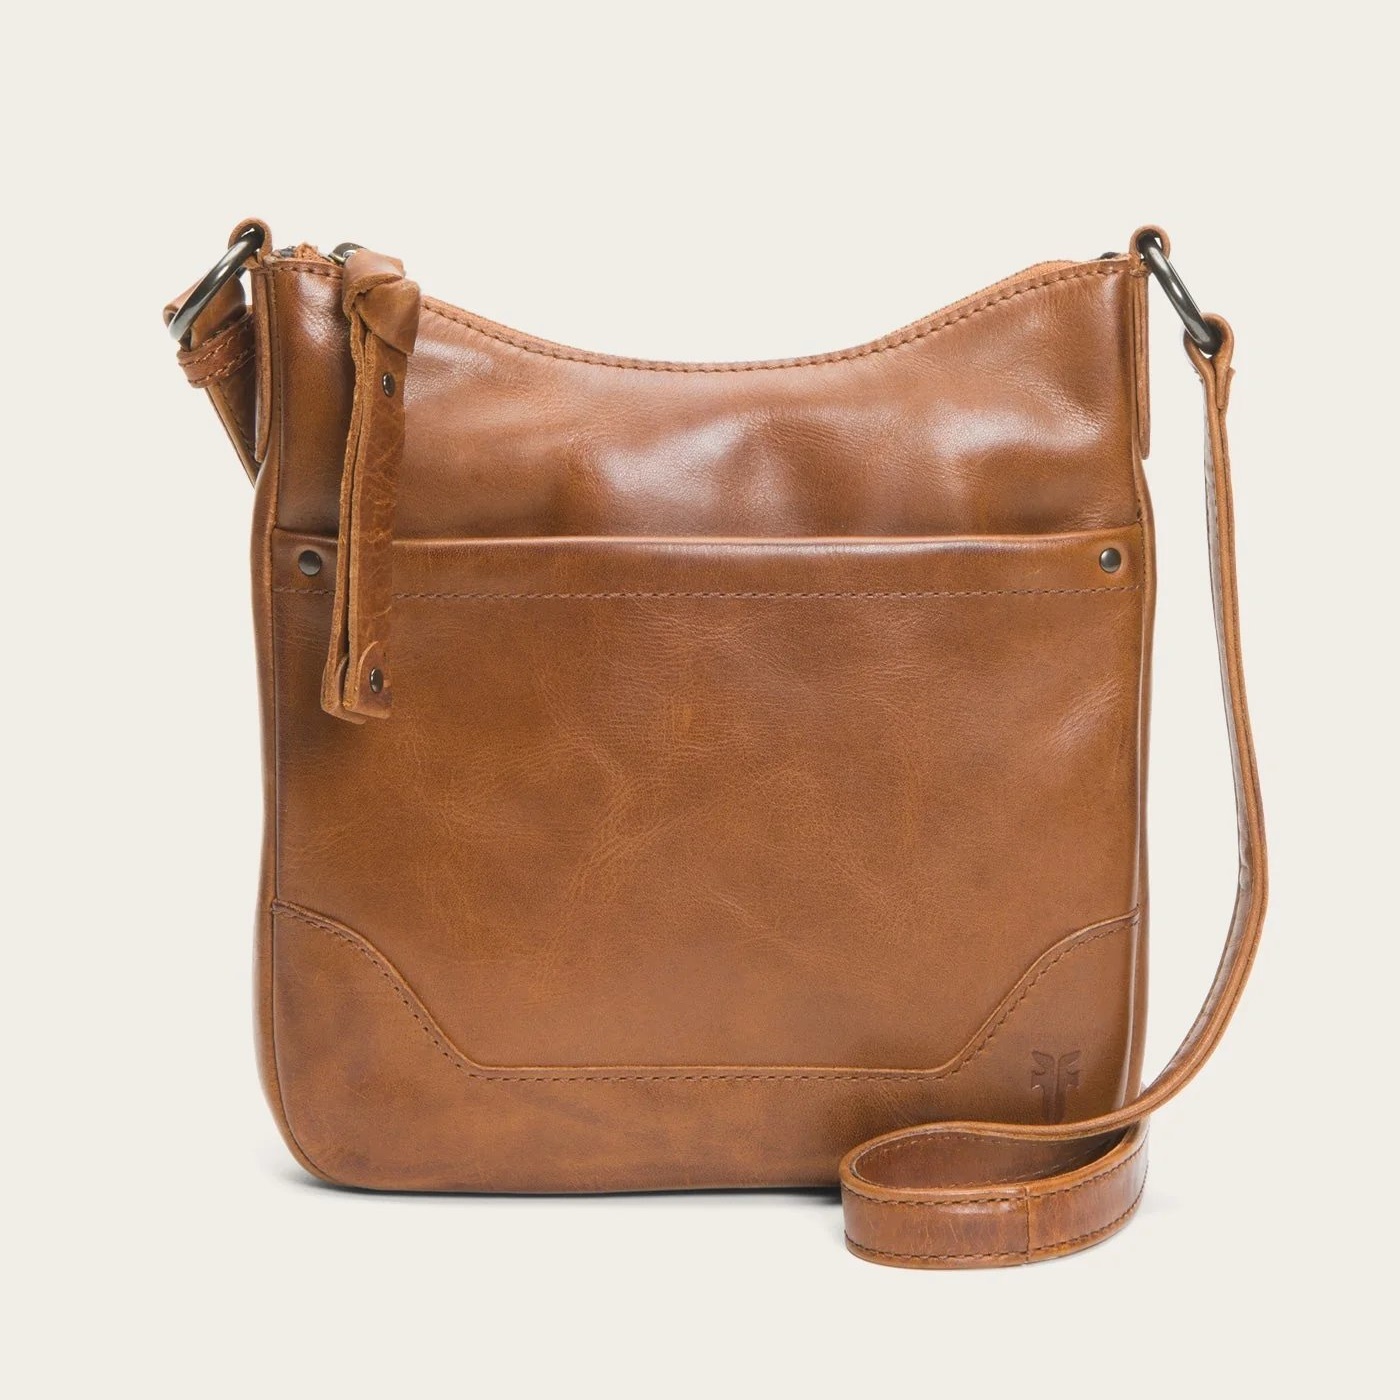 Сумка кросс-боди Frye Melissa Swing Pack Zip, светло-коричневый сумка кроссбоди мужская из натуральной кожи в стиле ретро